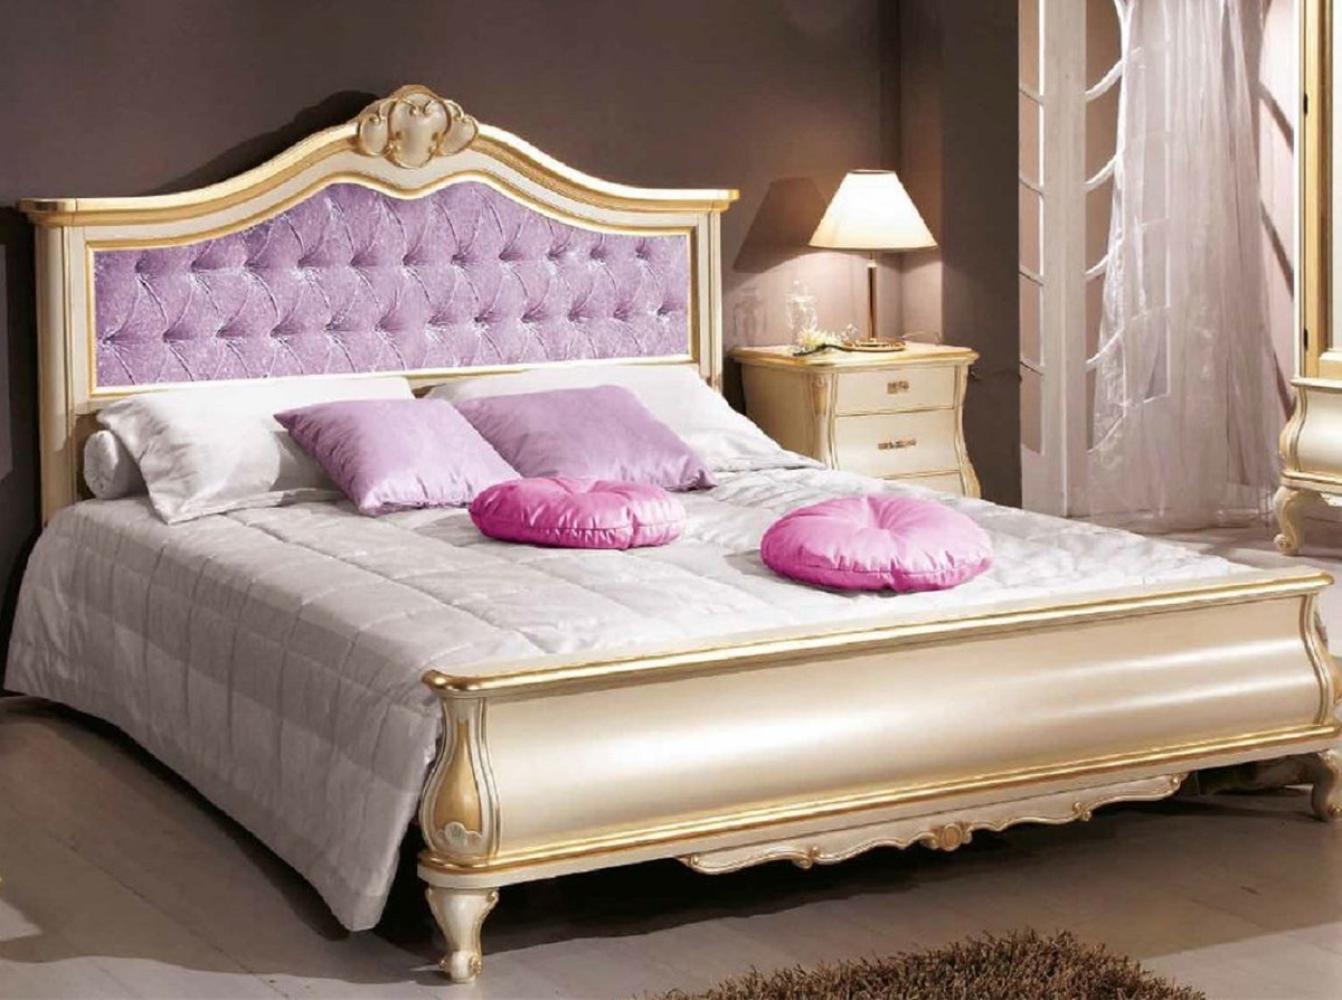 Casa Padrino Luxus Barock Doppelbett Lila / Cremefarben / Gold - Prunkvolles Massivholz Bett im Barockstil - Barock Schlafzimmer & Hotel Möbel - Luxus Qualität - Made in Italy Bild 1